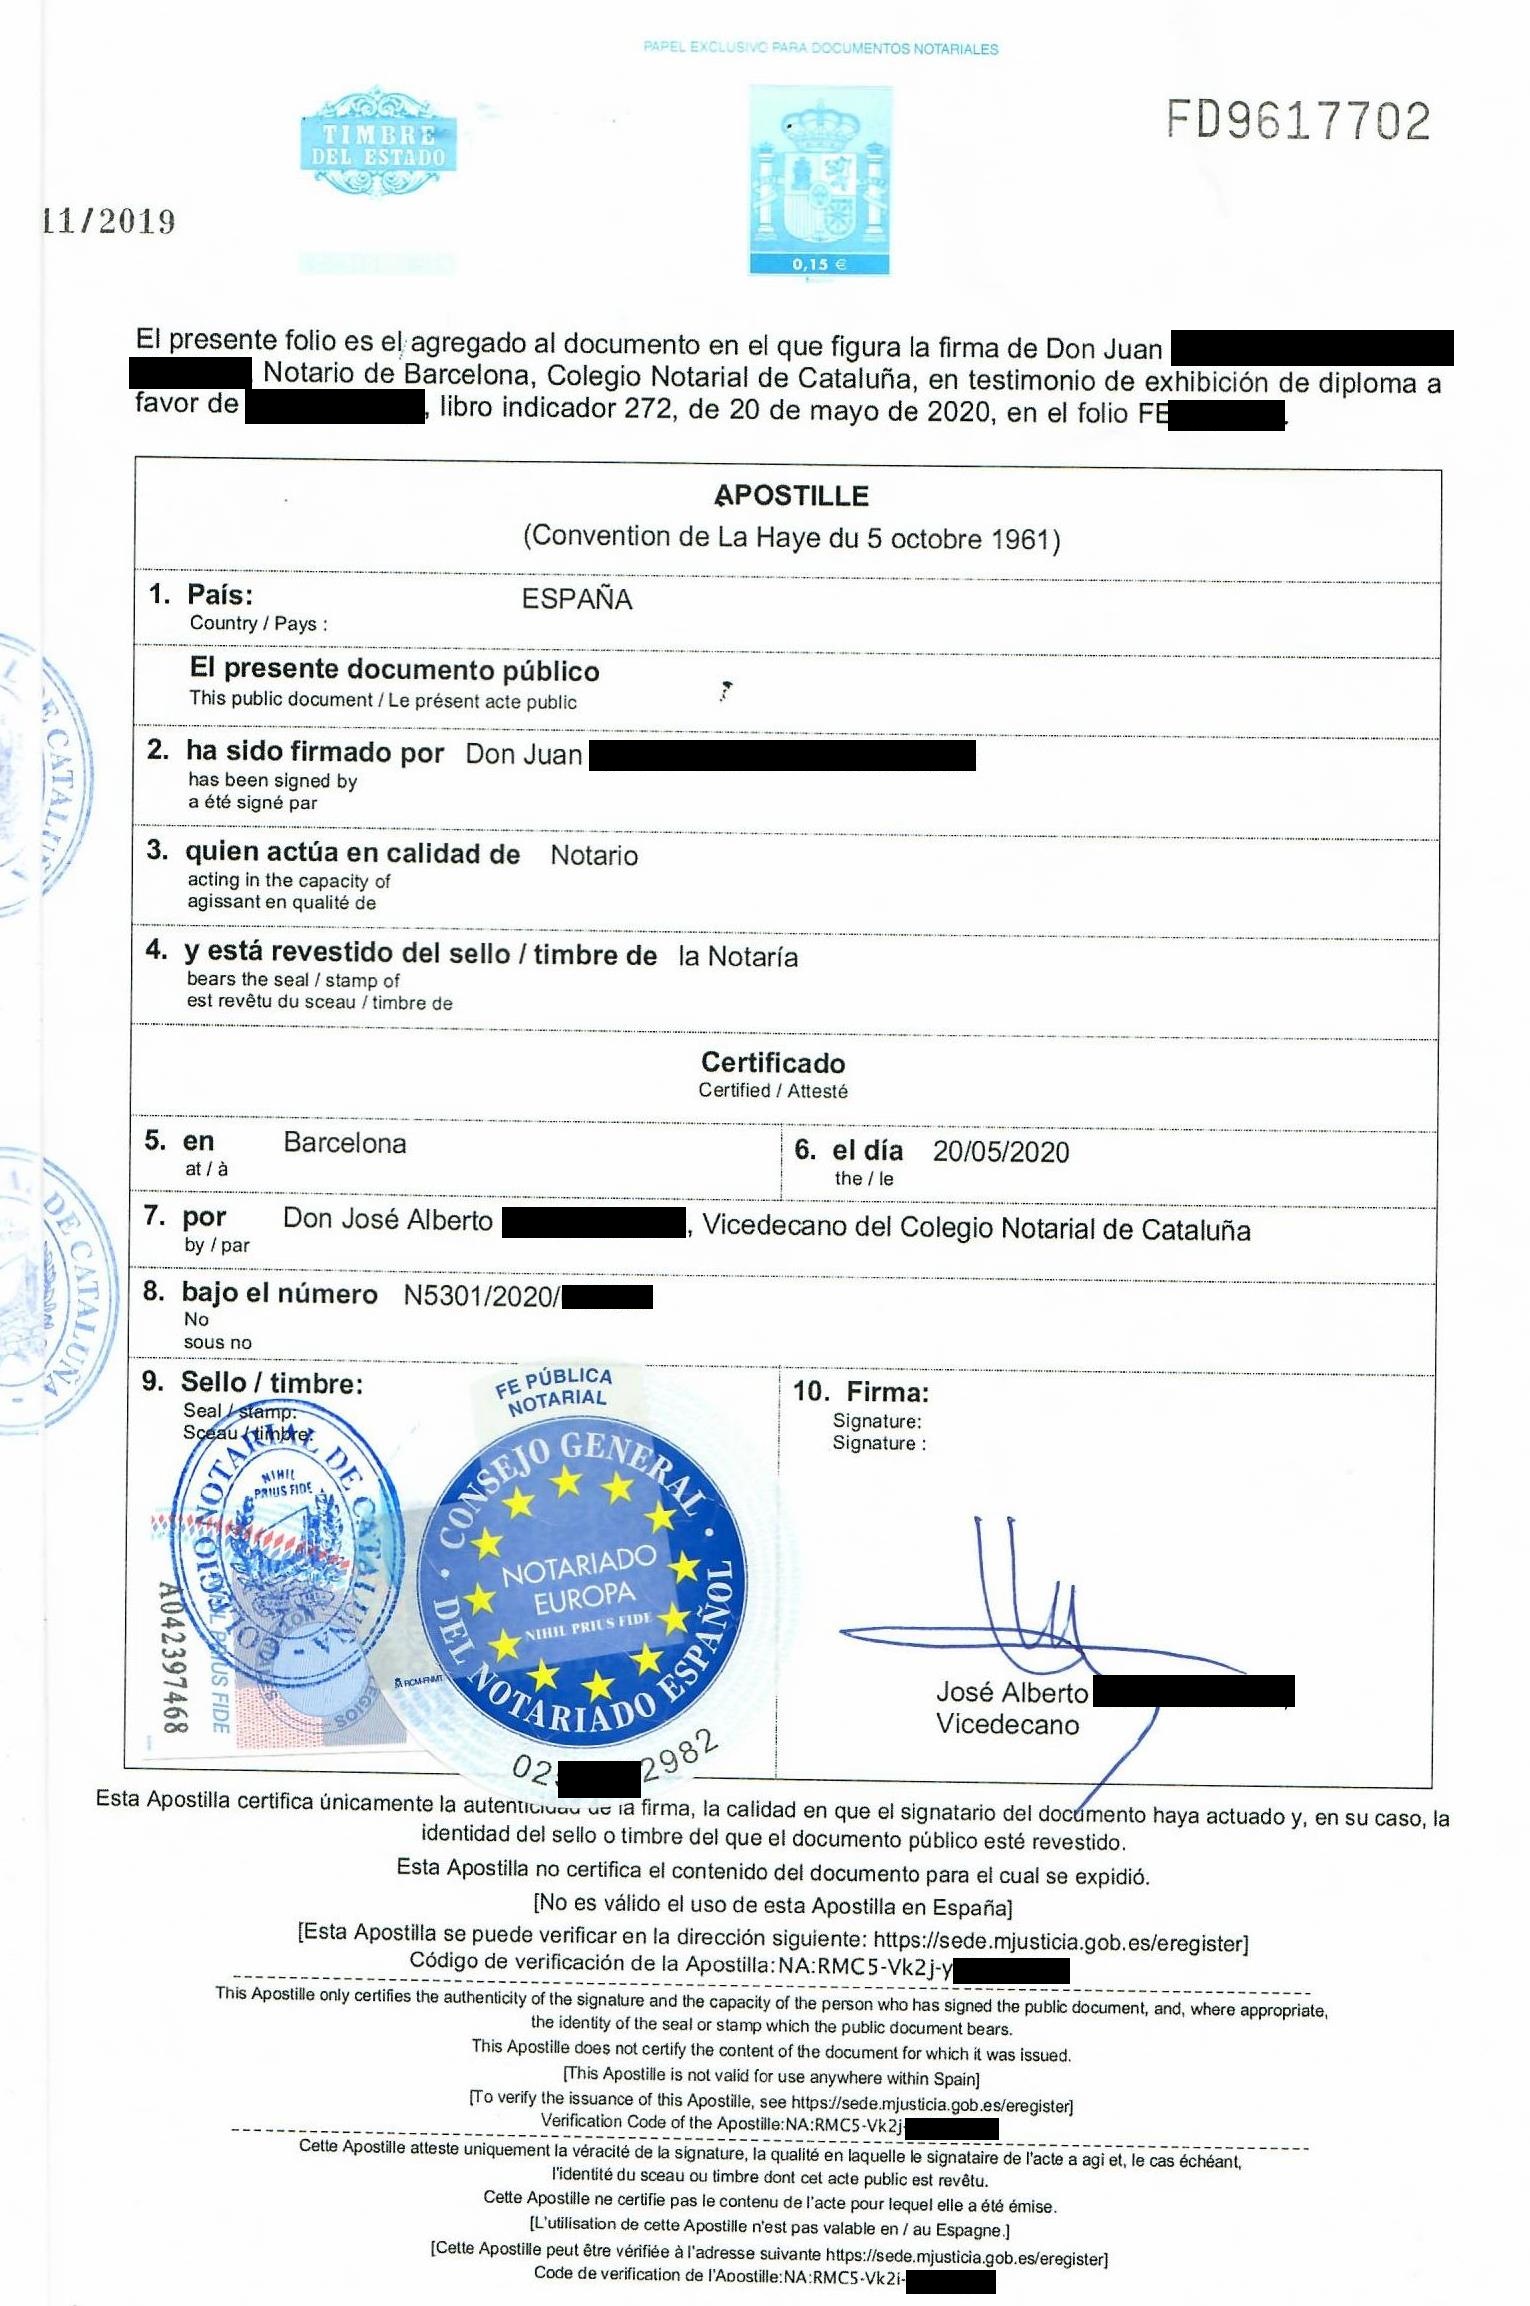 Beispiel einer Apostille für ein Diplom in Spanien